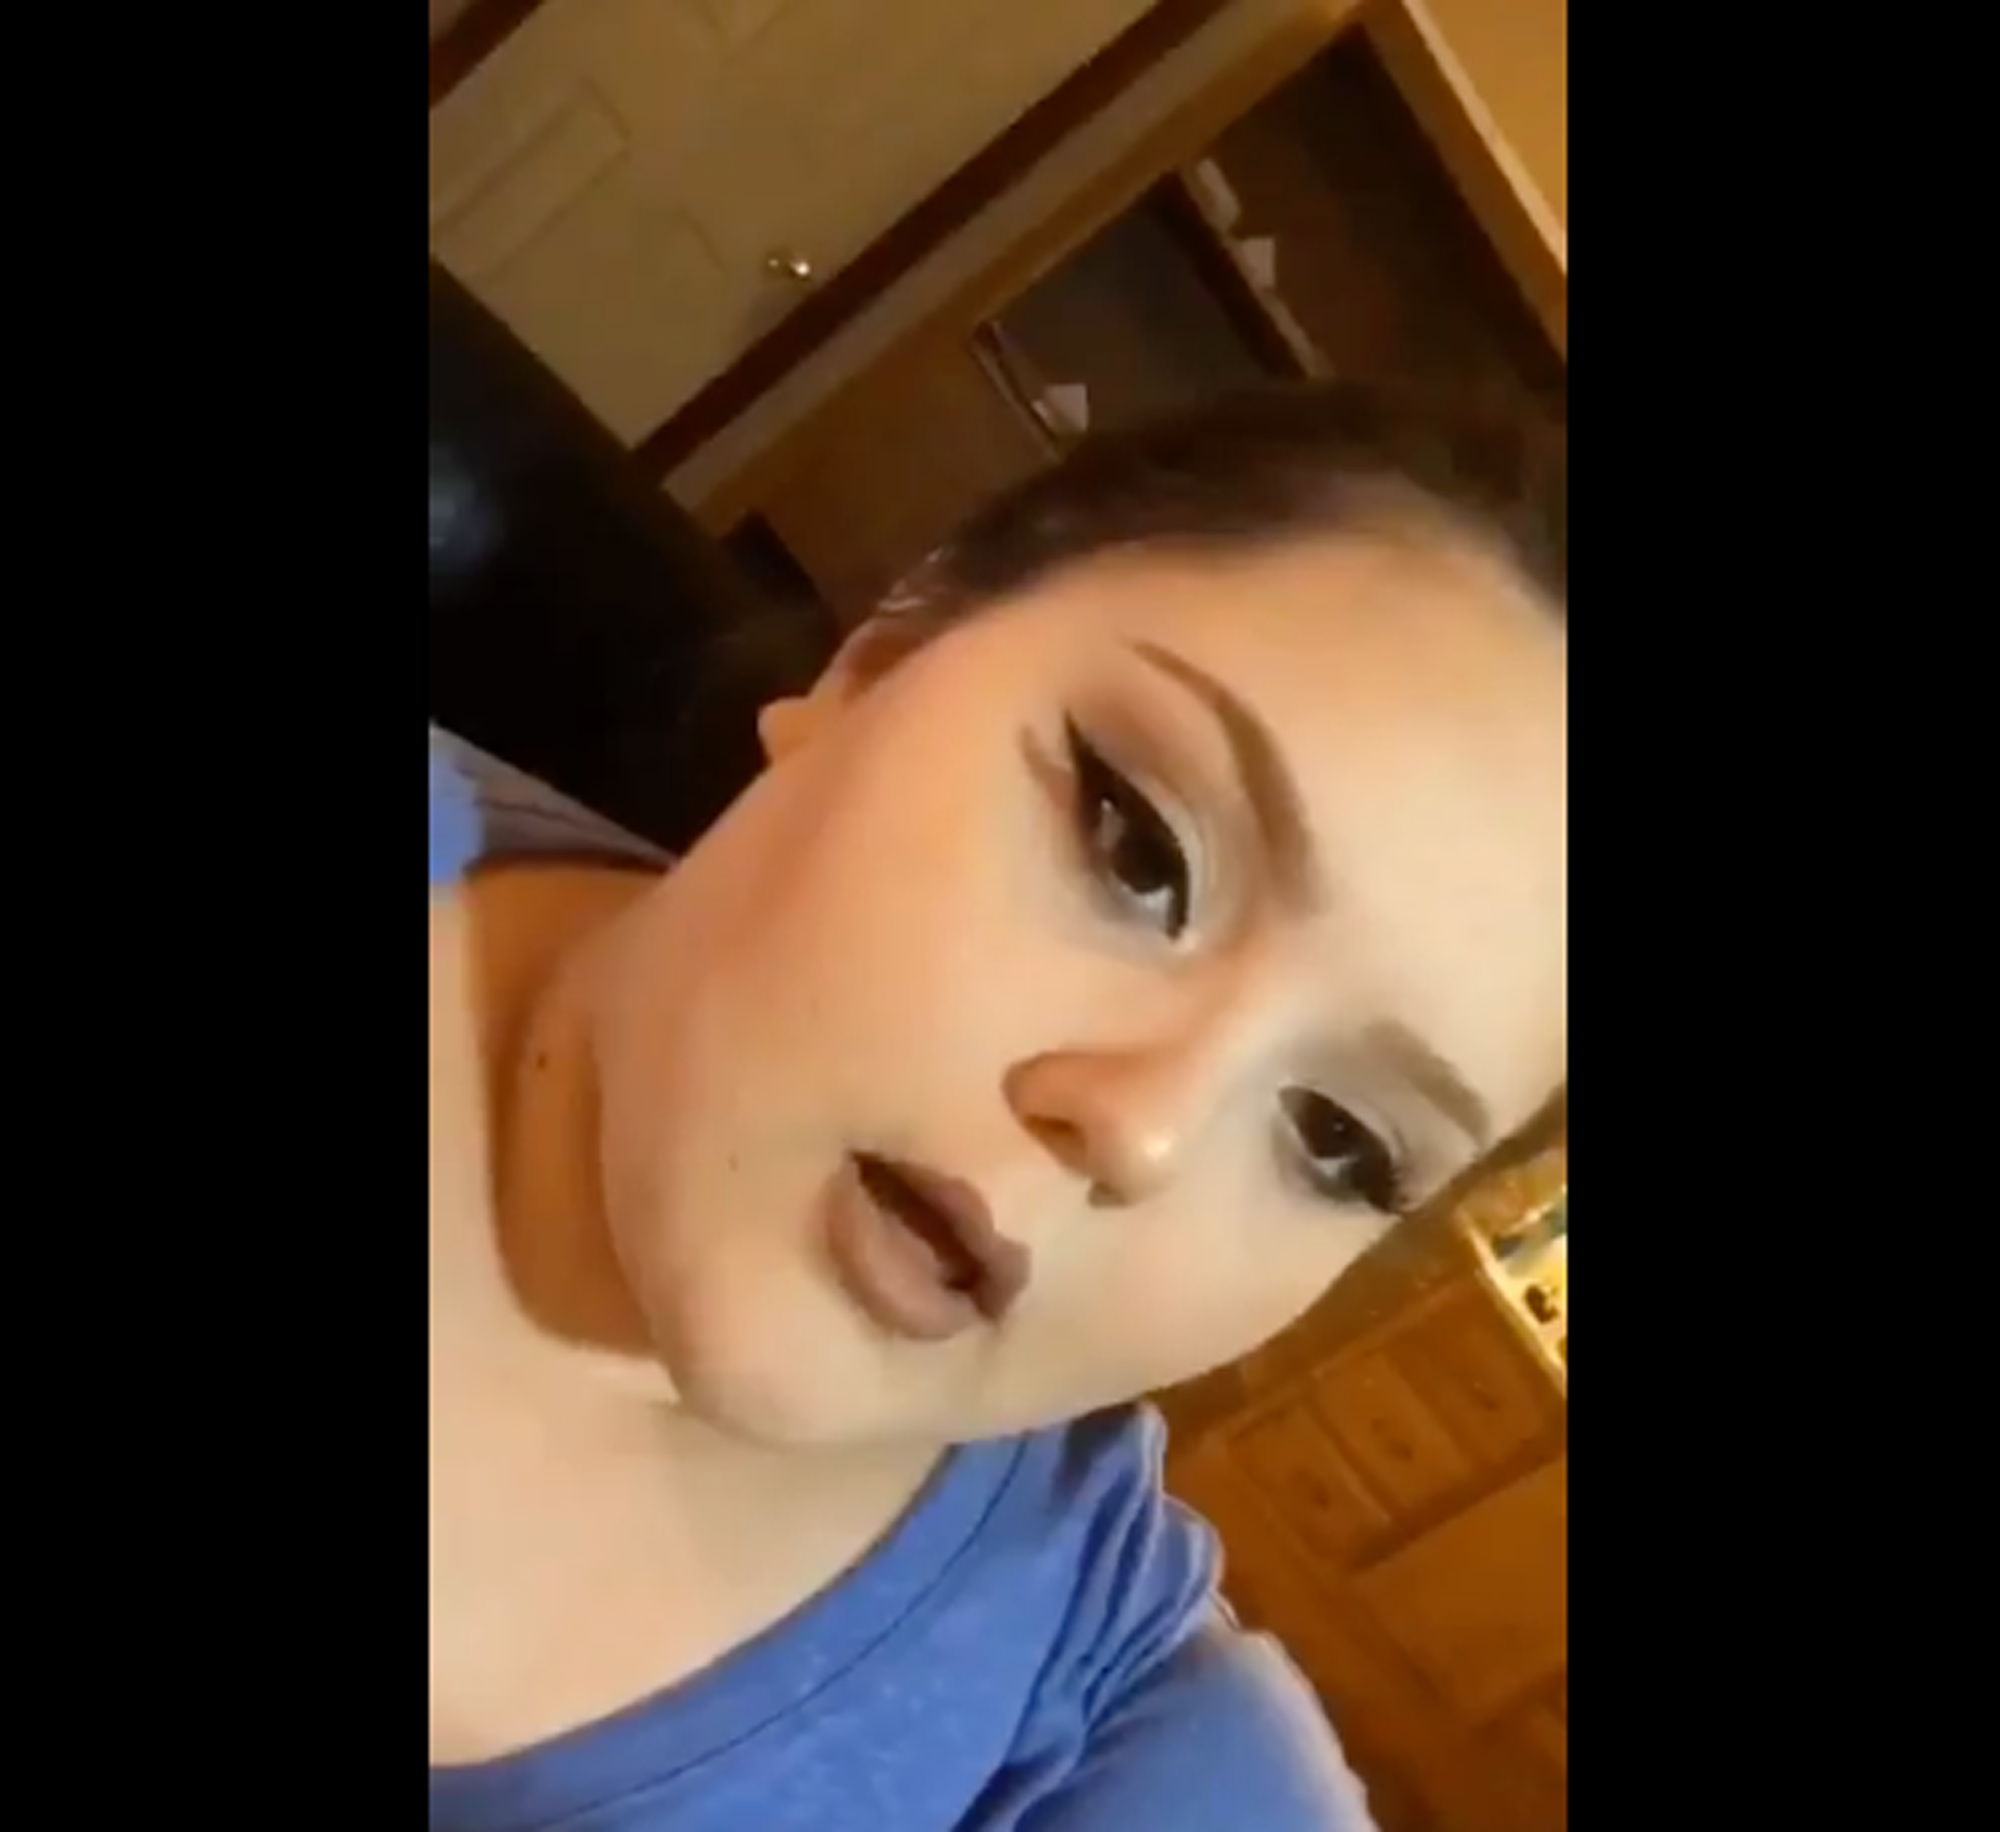 Watch This Woman's Hilarious Makeup Tutorial - Viral Makeup Tutorial Parody